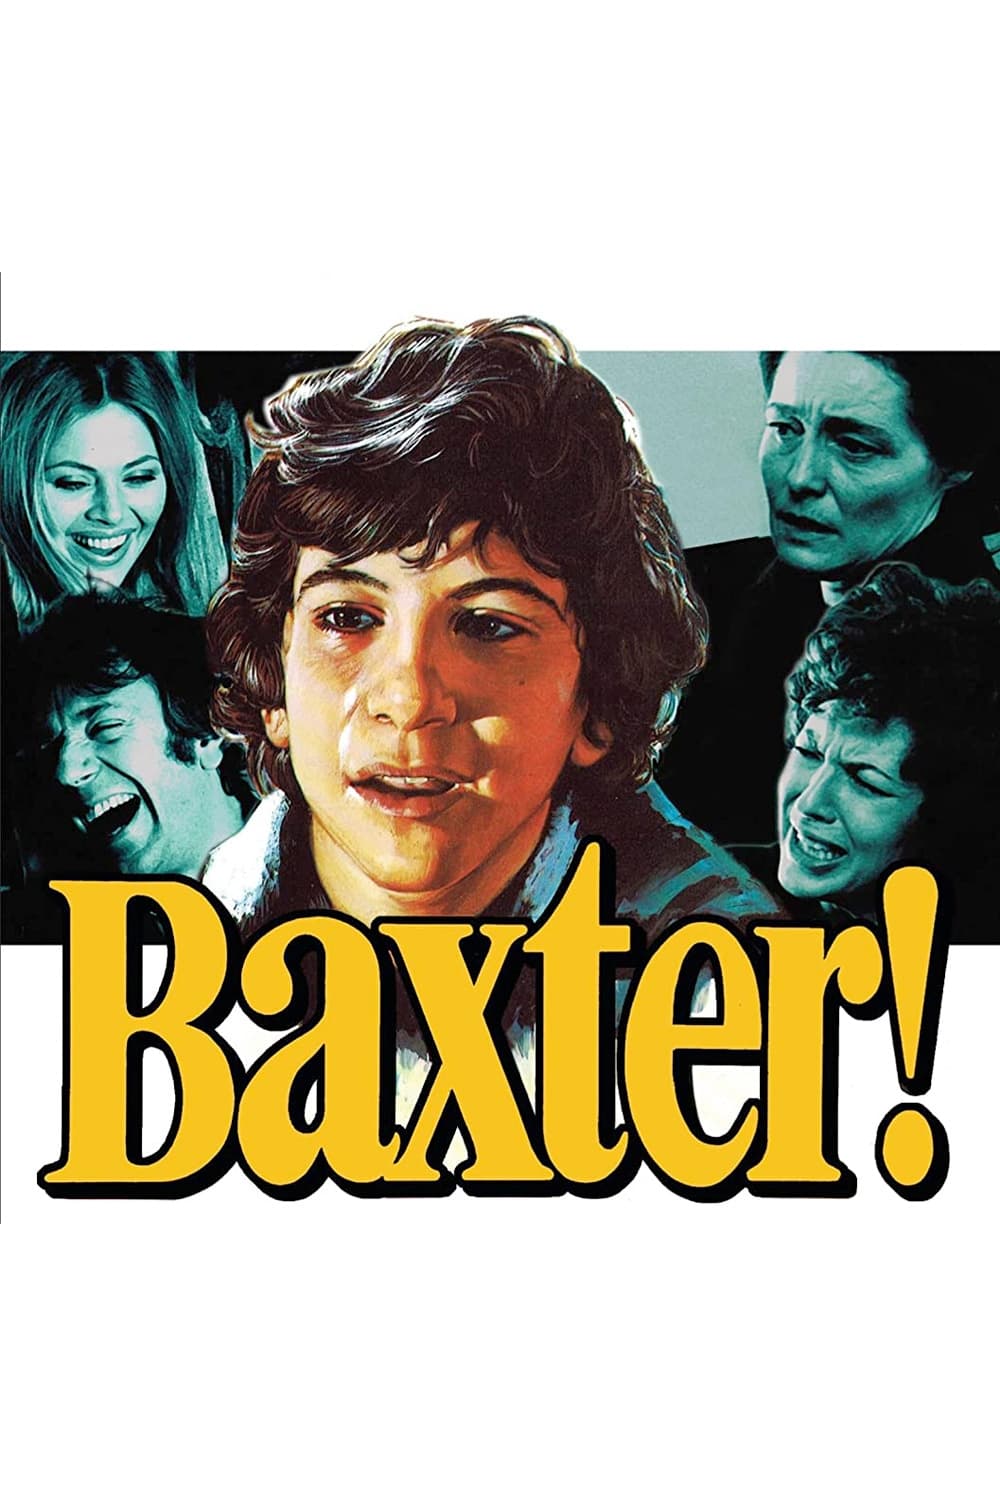 Baxter !